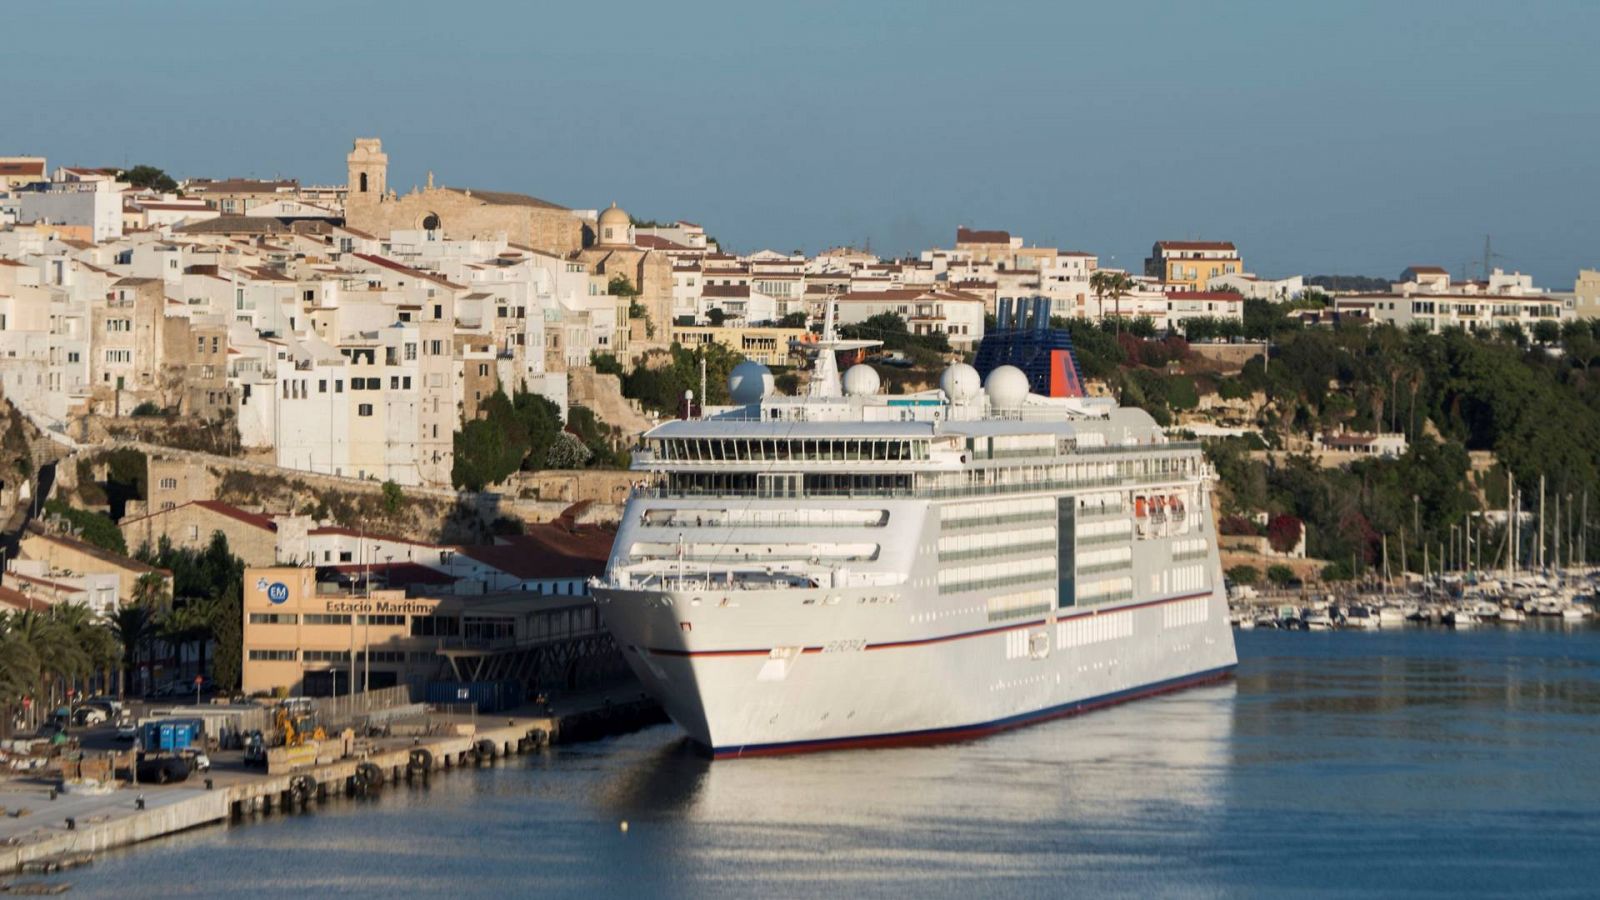 El buque "Europa 2" de la naviera Hapag Lloyd, atracado en el puerto de Mahón (Menorca)